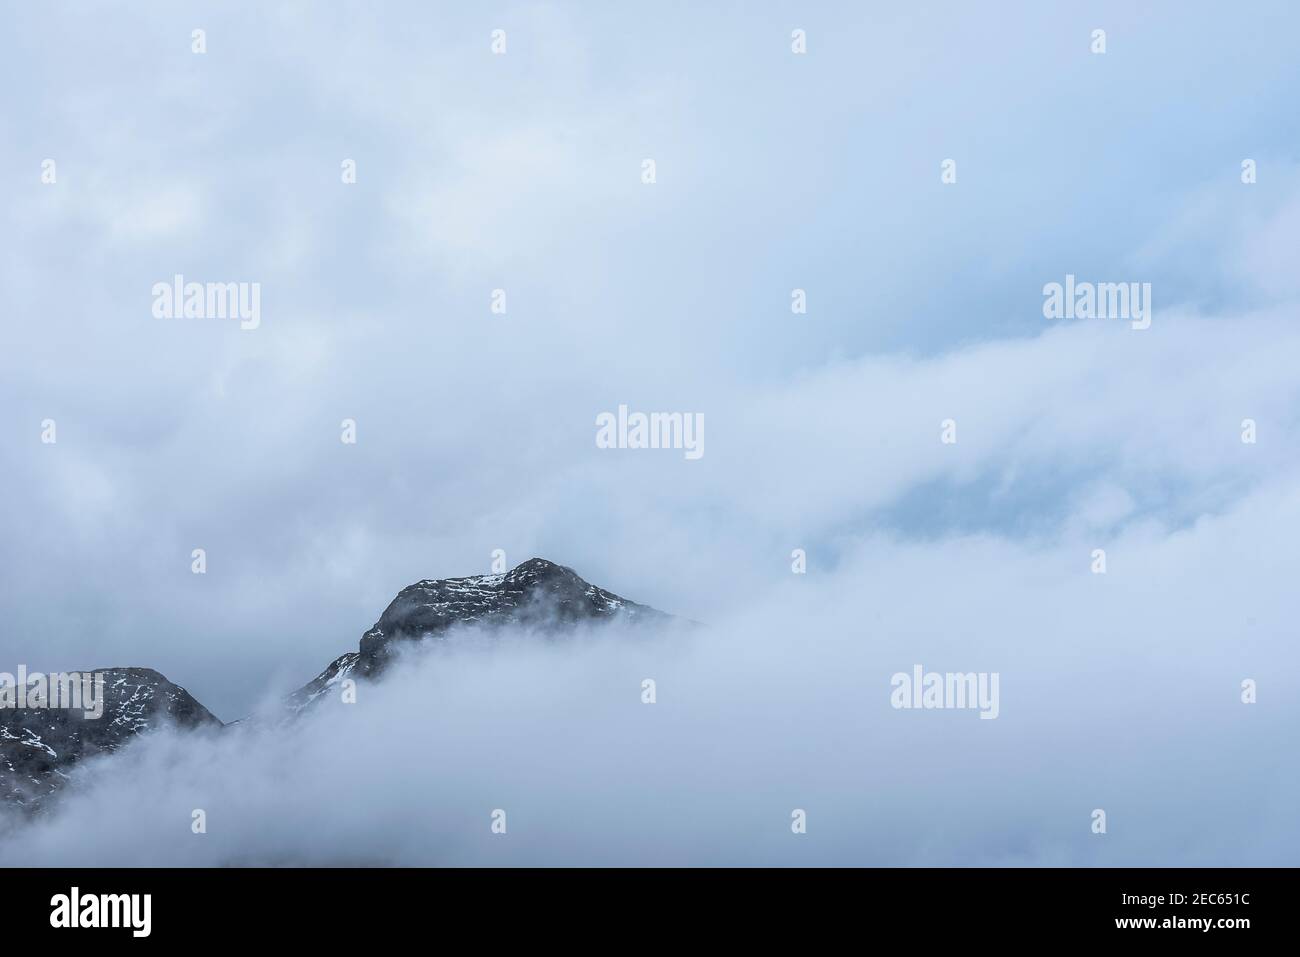 Superbe paysage d'hiver, vue de Side Pike vers Langdale pikes avec des nuages bas niveau sur les sommets de montagne et brume d'humeur changeante Banque D'Images